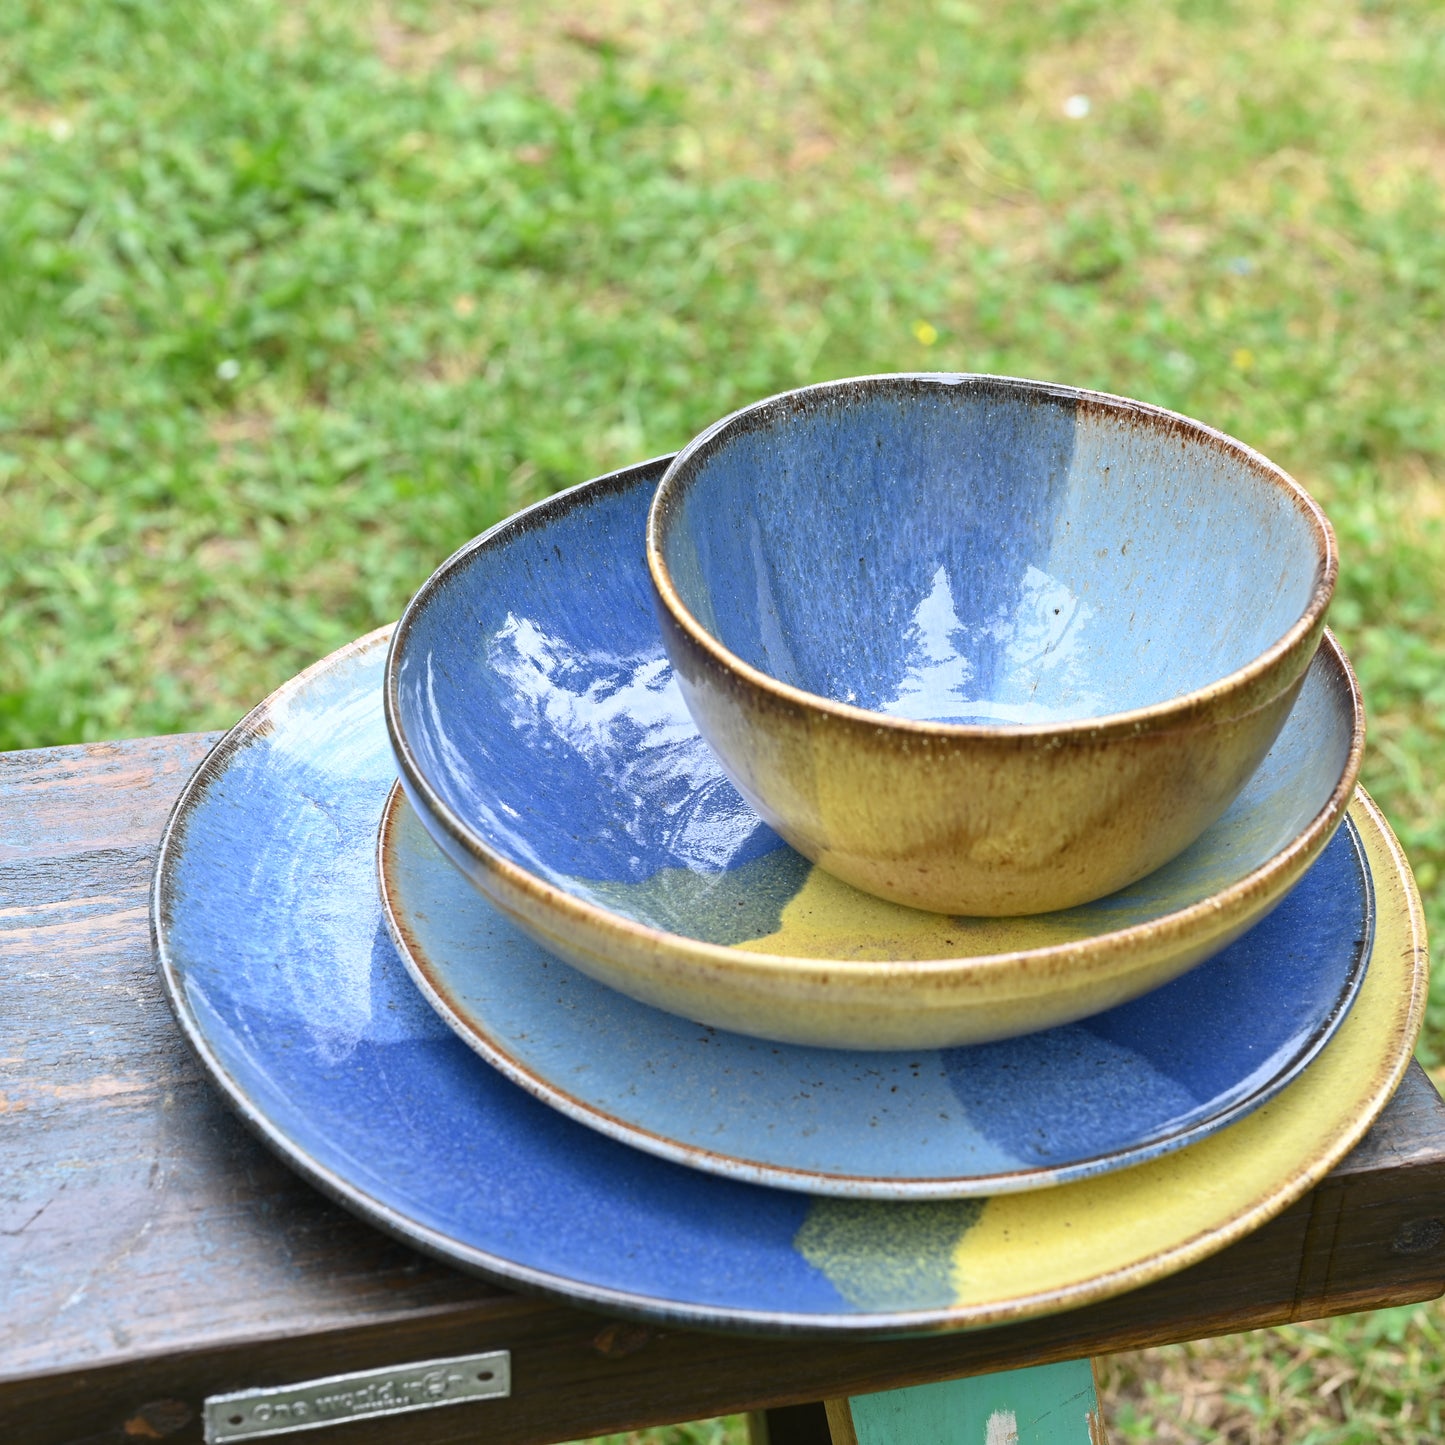 assiettes de différentes tailles (plates, à dessert, creuse) et bol de style "Corals" (grès naturel avec motif tricolore bleu profond, bleu ciel et jaune, empilées sur un banc en bois dans un jardin